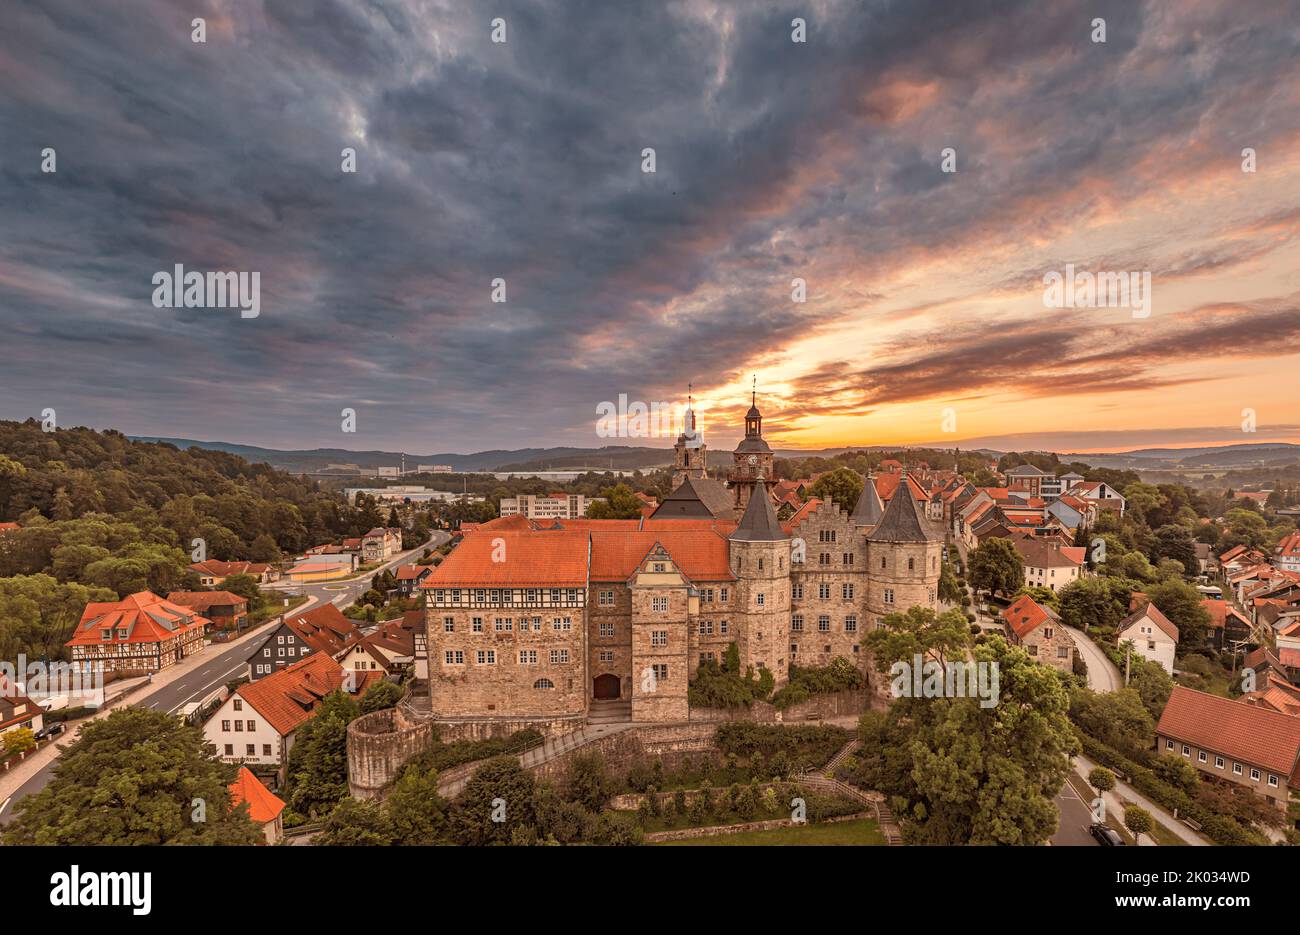 Germania, Turingia, Schleusingen, Castello di Bertholdsburg (Museo di Storia Naturale), alba, retroilluminazione Foto Stock